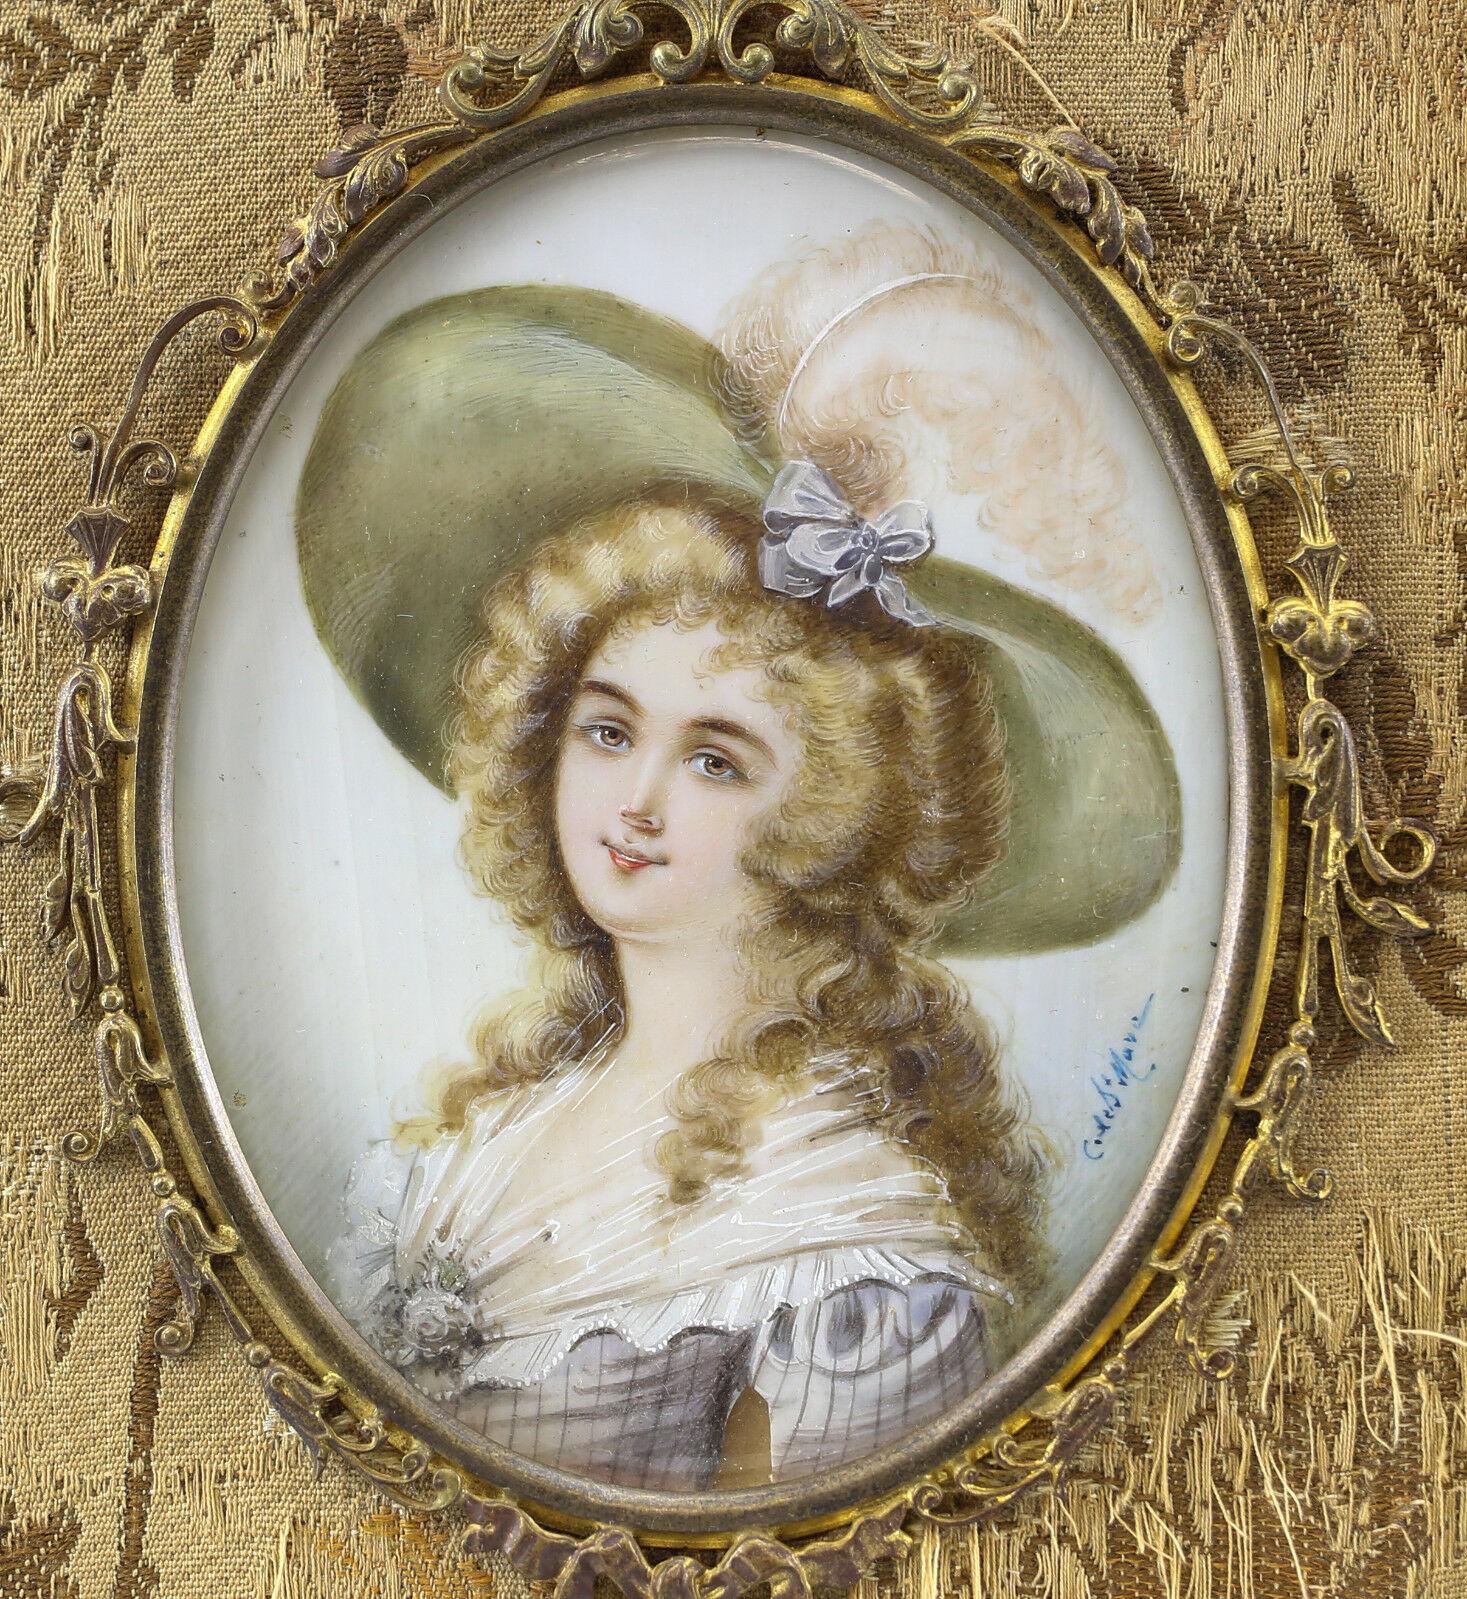 Portrait de femme miniature français, cadre en bronze doré, peint à la main, 19e siècle

Signé. 19ème siècle. Jeune femme de style baroque coiffée d'un grand chapeau vert.

Informations supplémentaires :
Région d'origine : Europe 
Type de